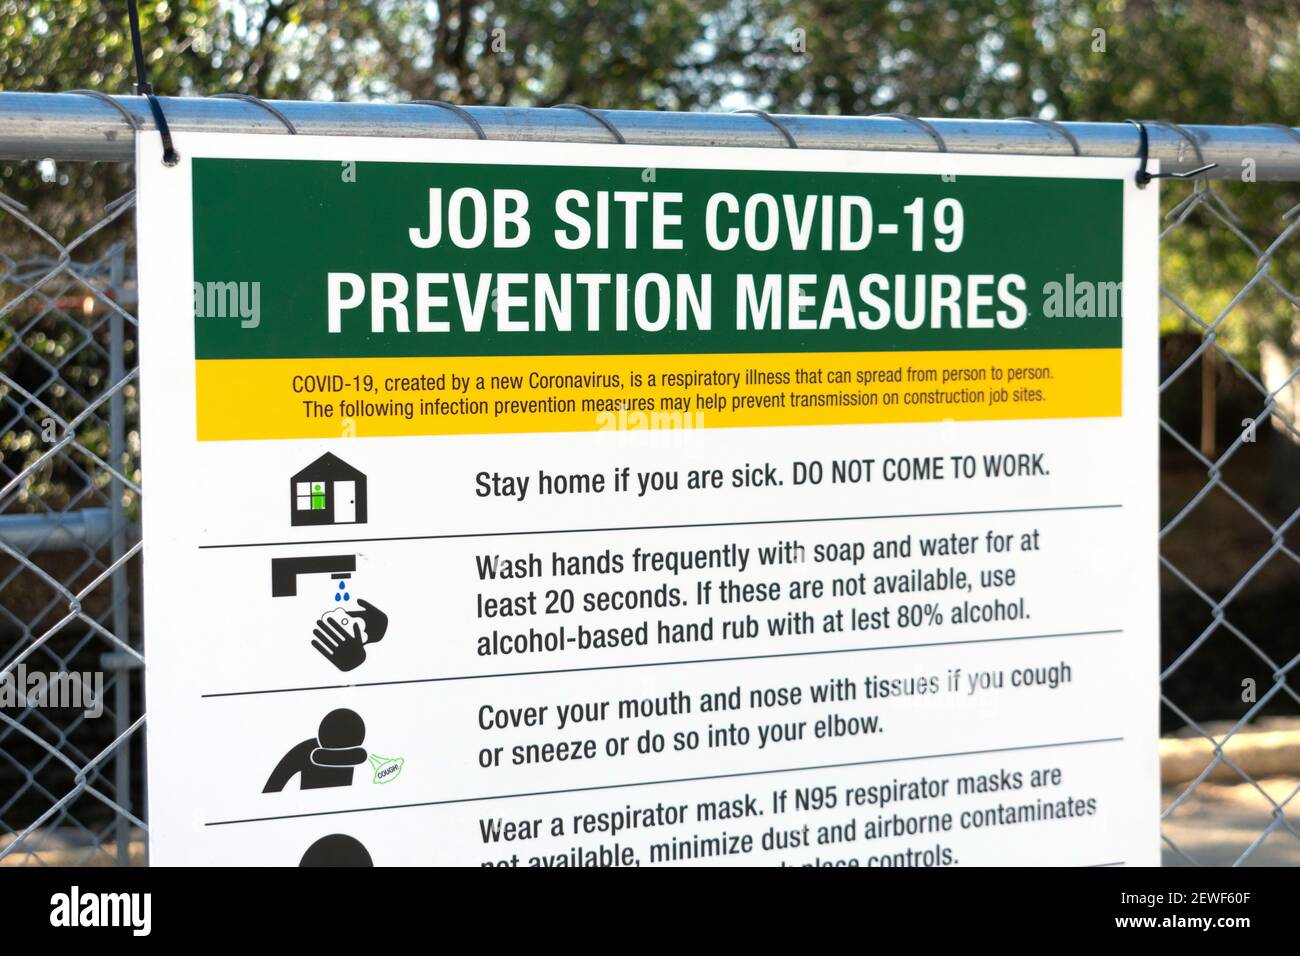 Cartello delle misure di prevenzione del cantiere Covid-19 con le istruzioni appese sulla recinzione all'ingresso del luogo di lavoro. - San Jose, California, Stati Uniti d'America - 2021 Foto Stock